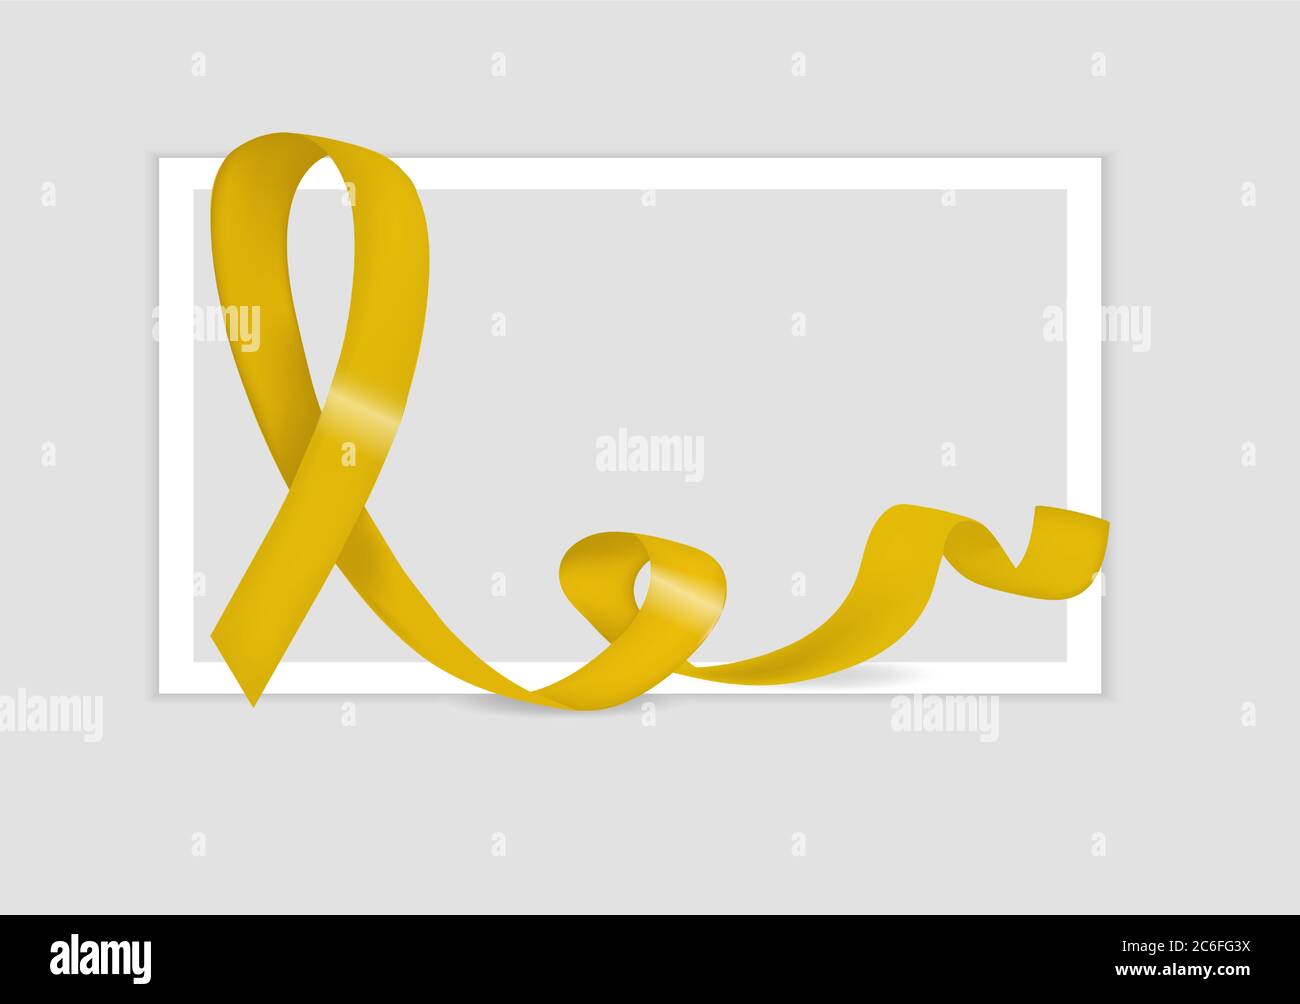 Welt-Selbstmord-Prävention-Tag mit gelbem Band Bewusstsein. Loop Emblem zur Unterstützung von militärischen Tierärzten, Konflikten, Selbstmorden. Vektor Stock Vektor